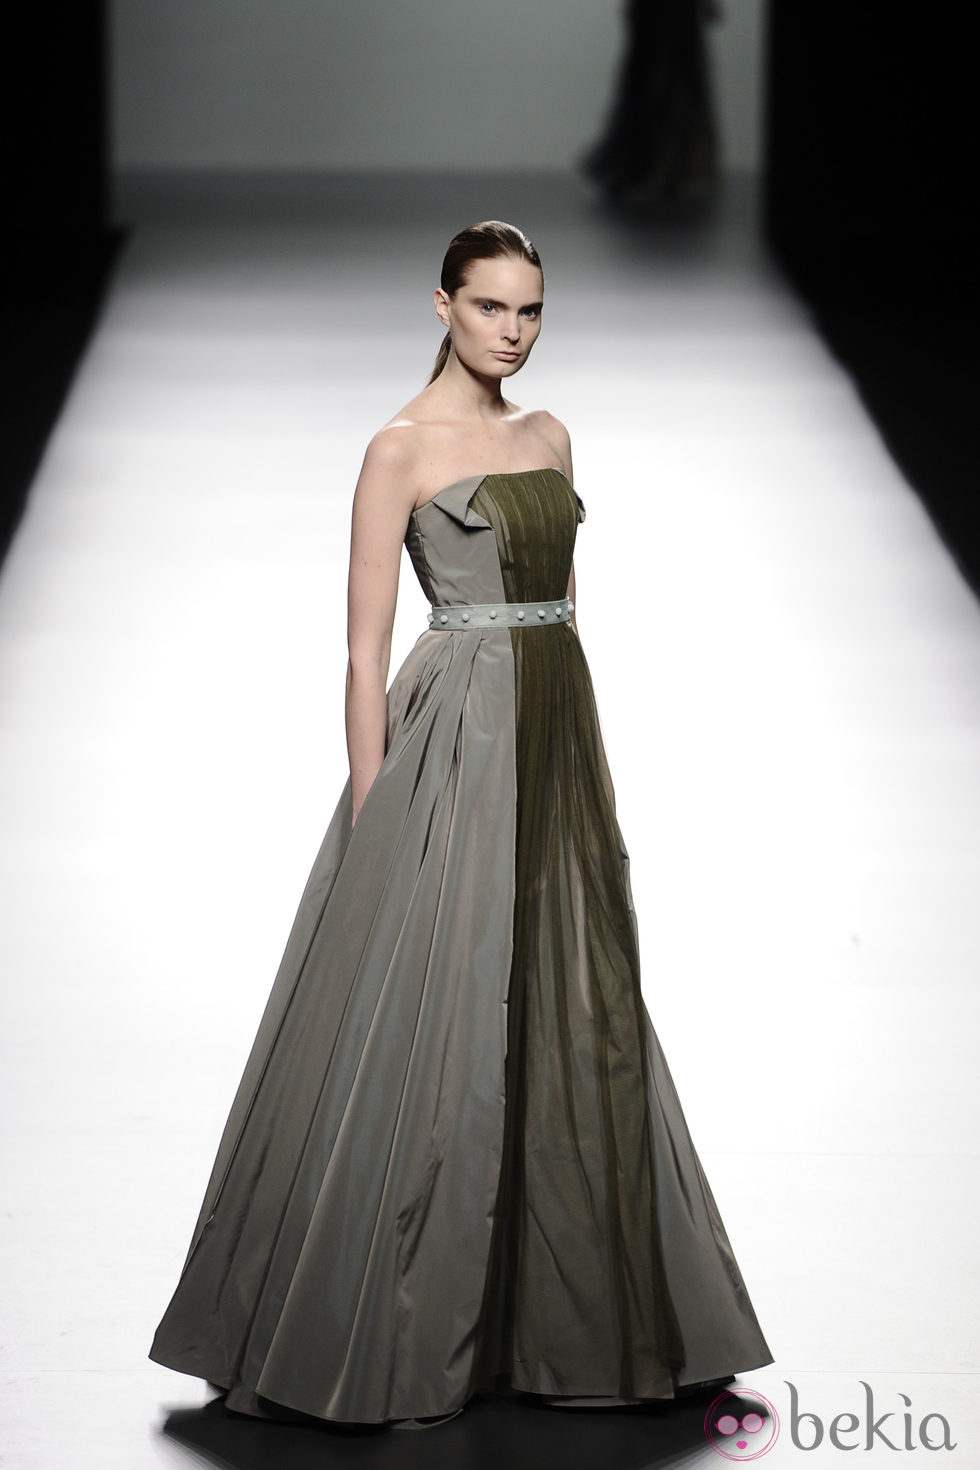 Vestido palabra de honor de la colección otoño/invierno 2013/2014 de Victorio & Lucchino en Madrid Fashion Week